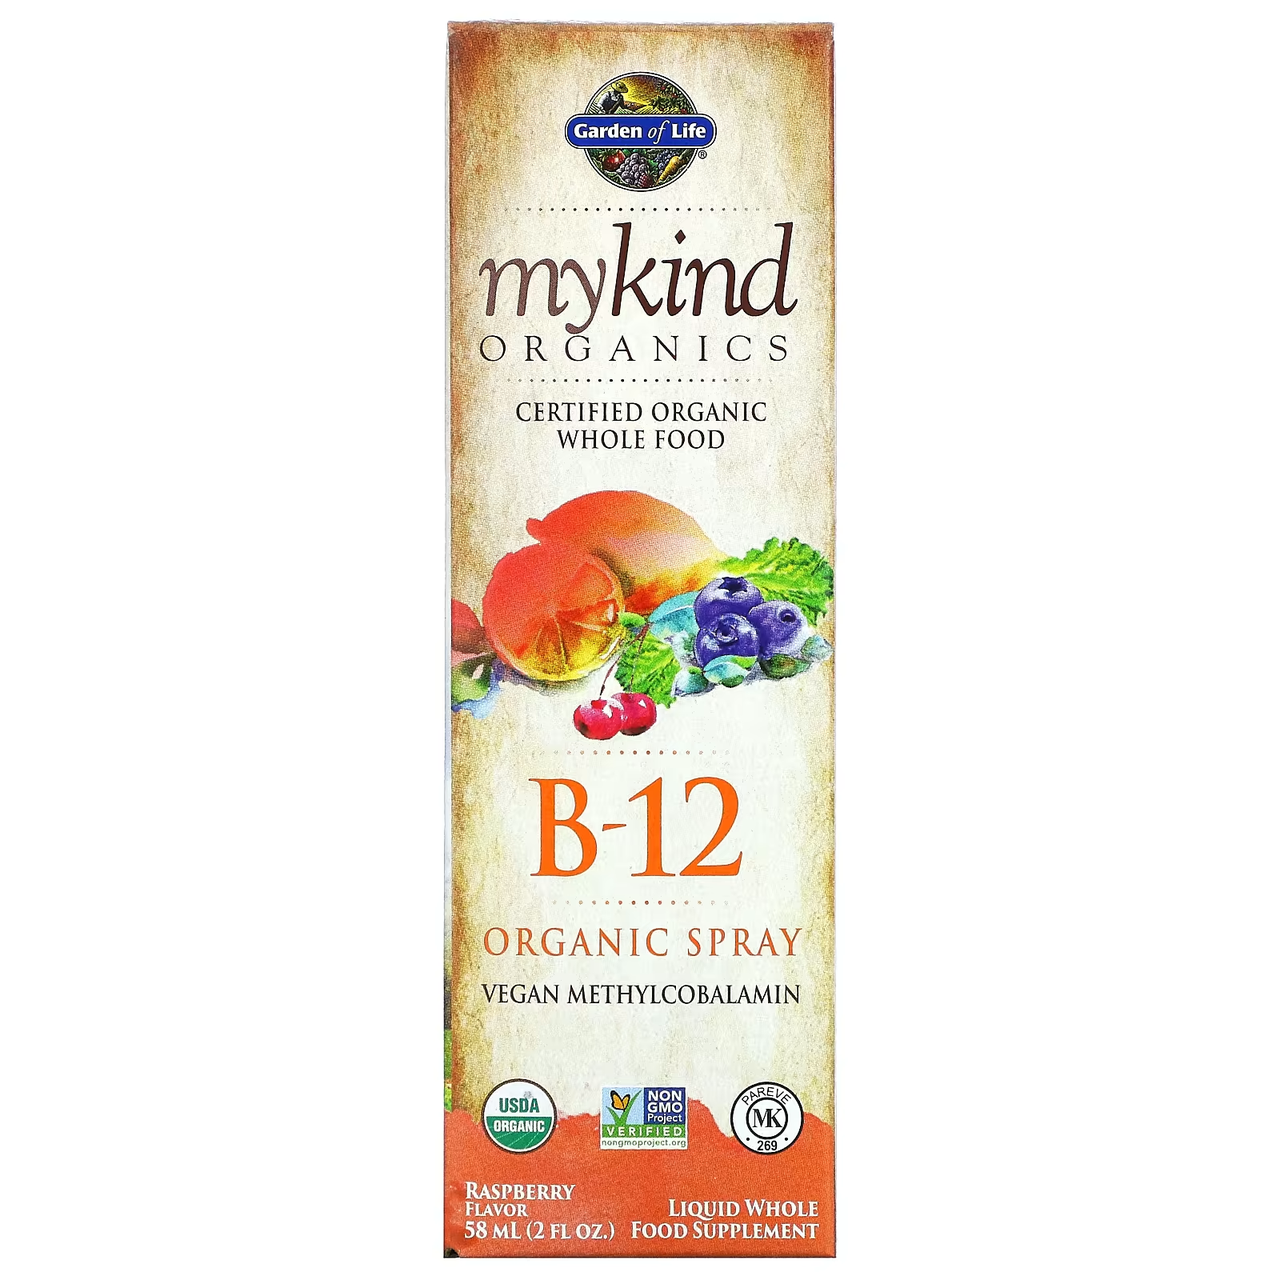 Вітамін B12 у формі спрею, зі смаком малини, 58 мл Garden of Life, MyKind Organics